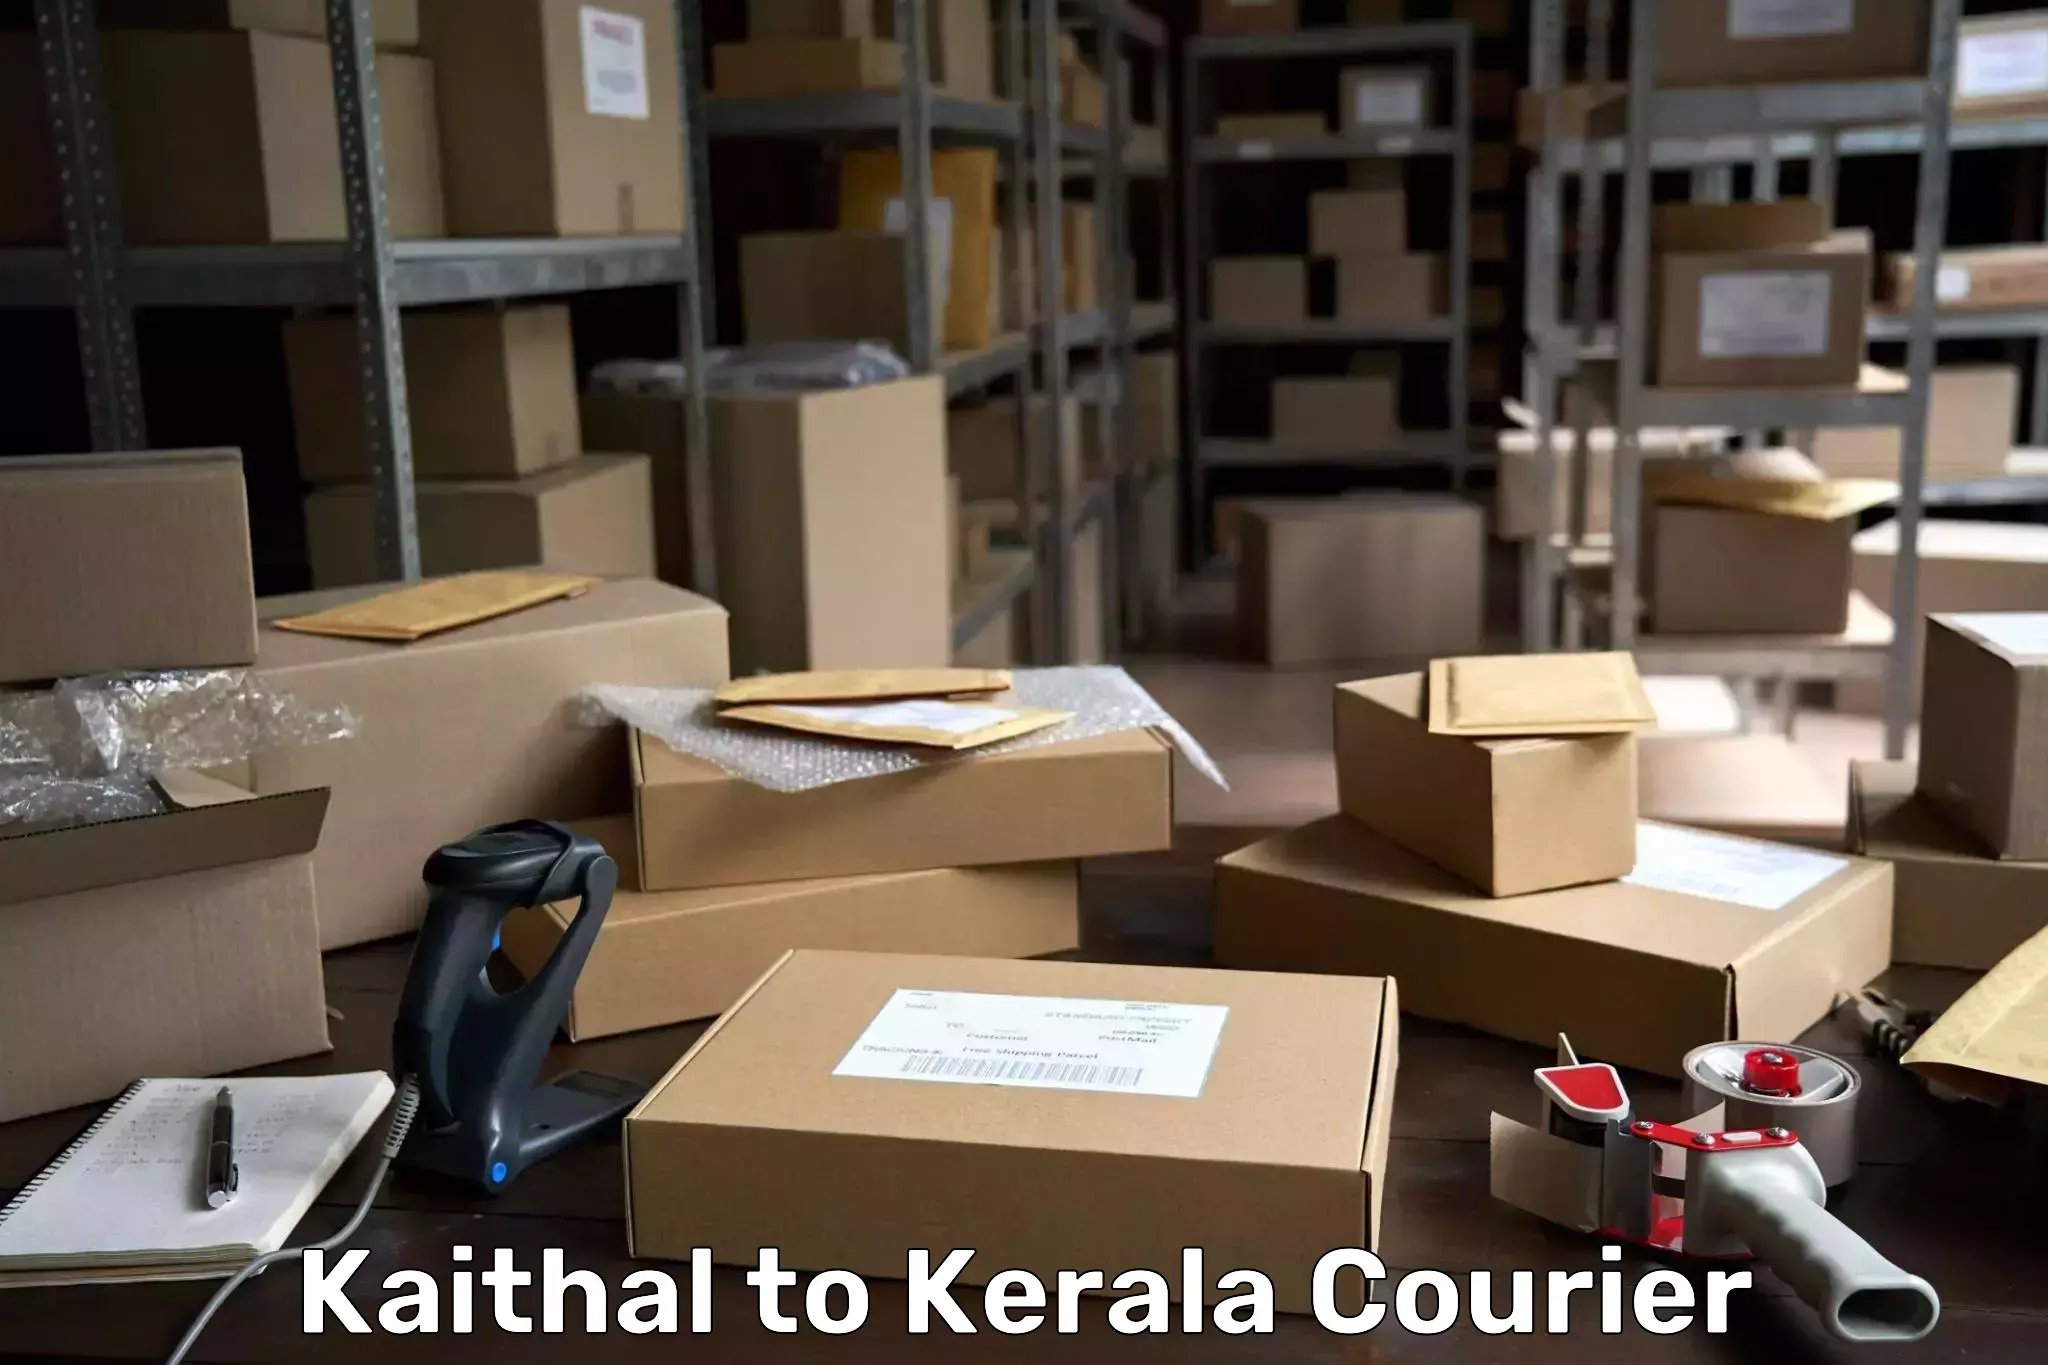 Express package handling Kaithal to Kerala